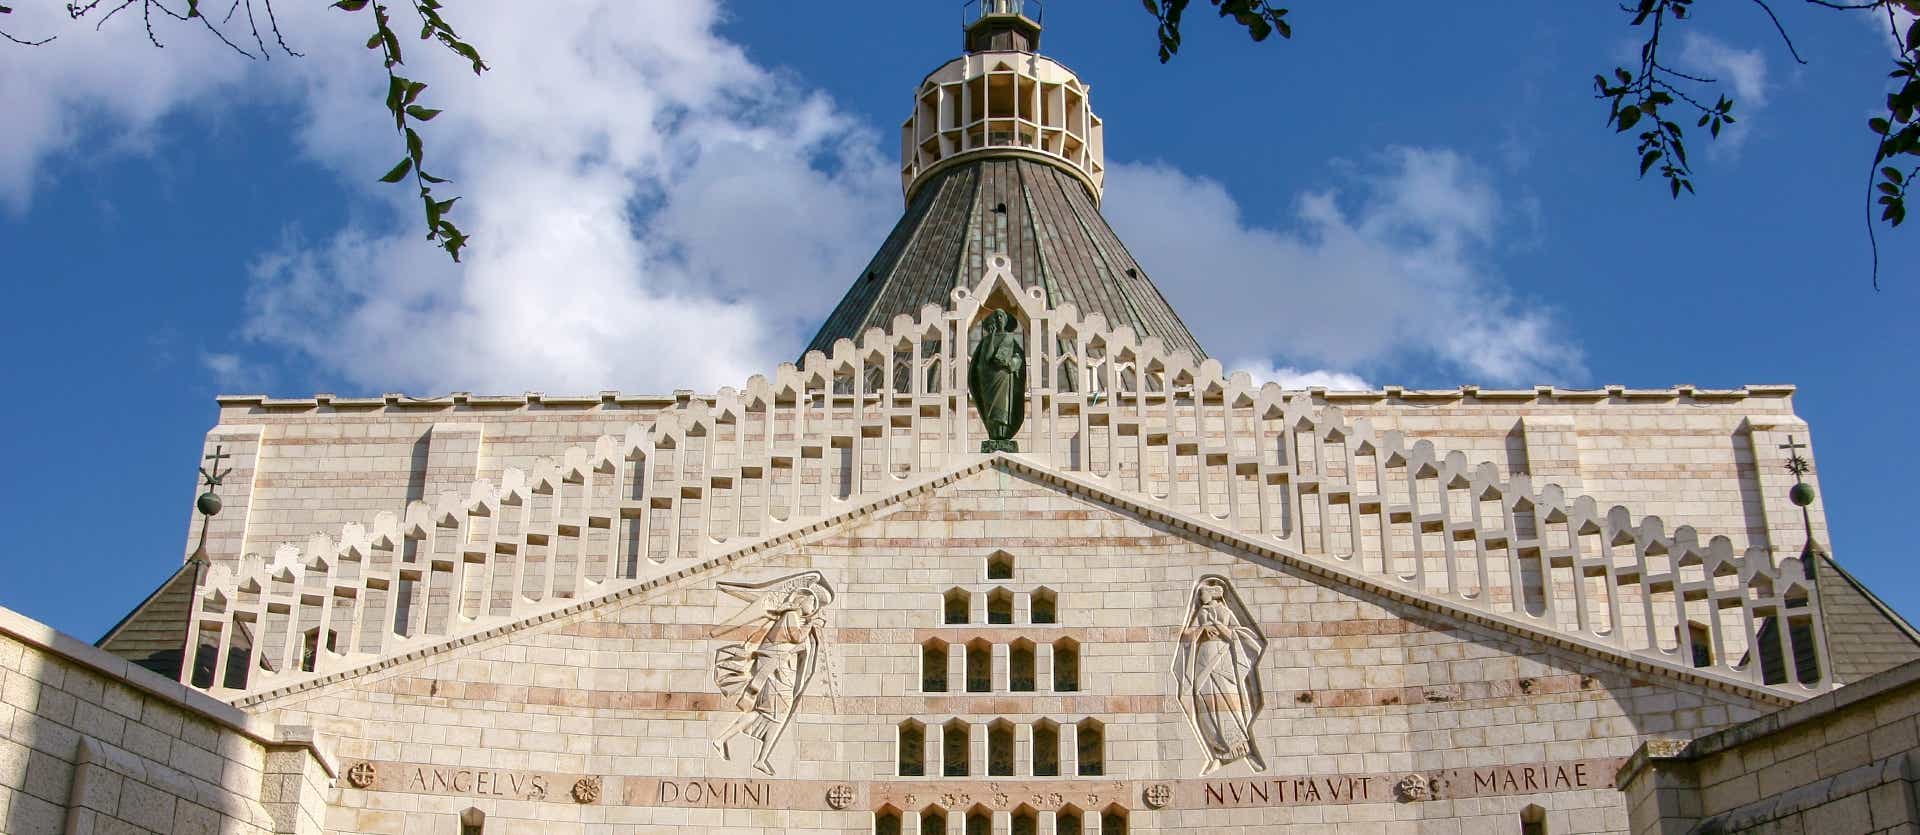 Basílica de la Anunciación <span class="iconos separador"></span> Tel Aviv